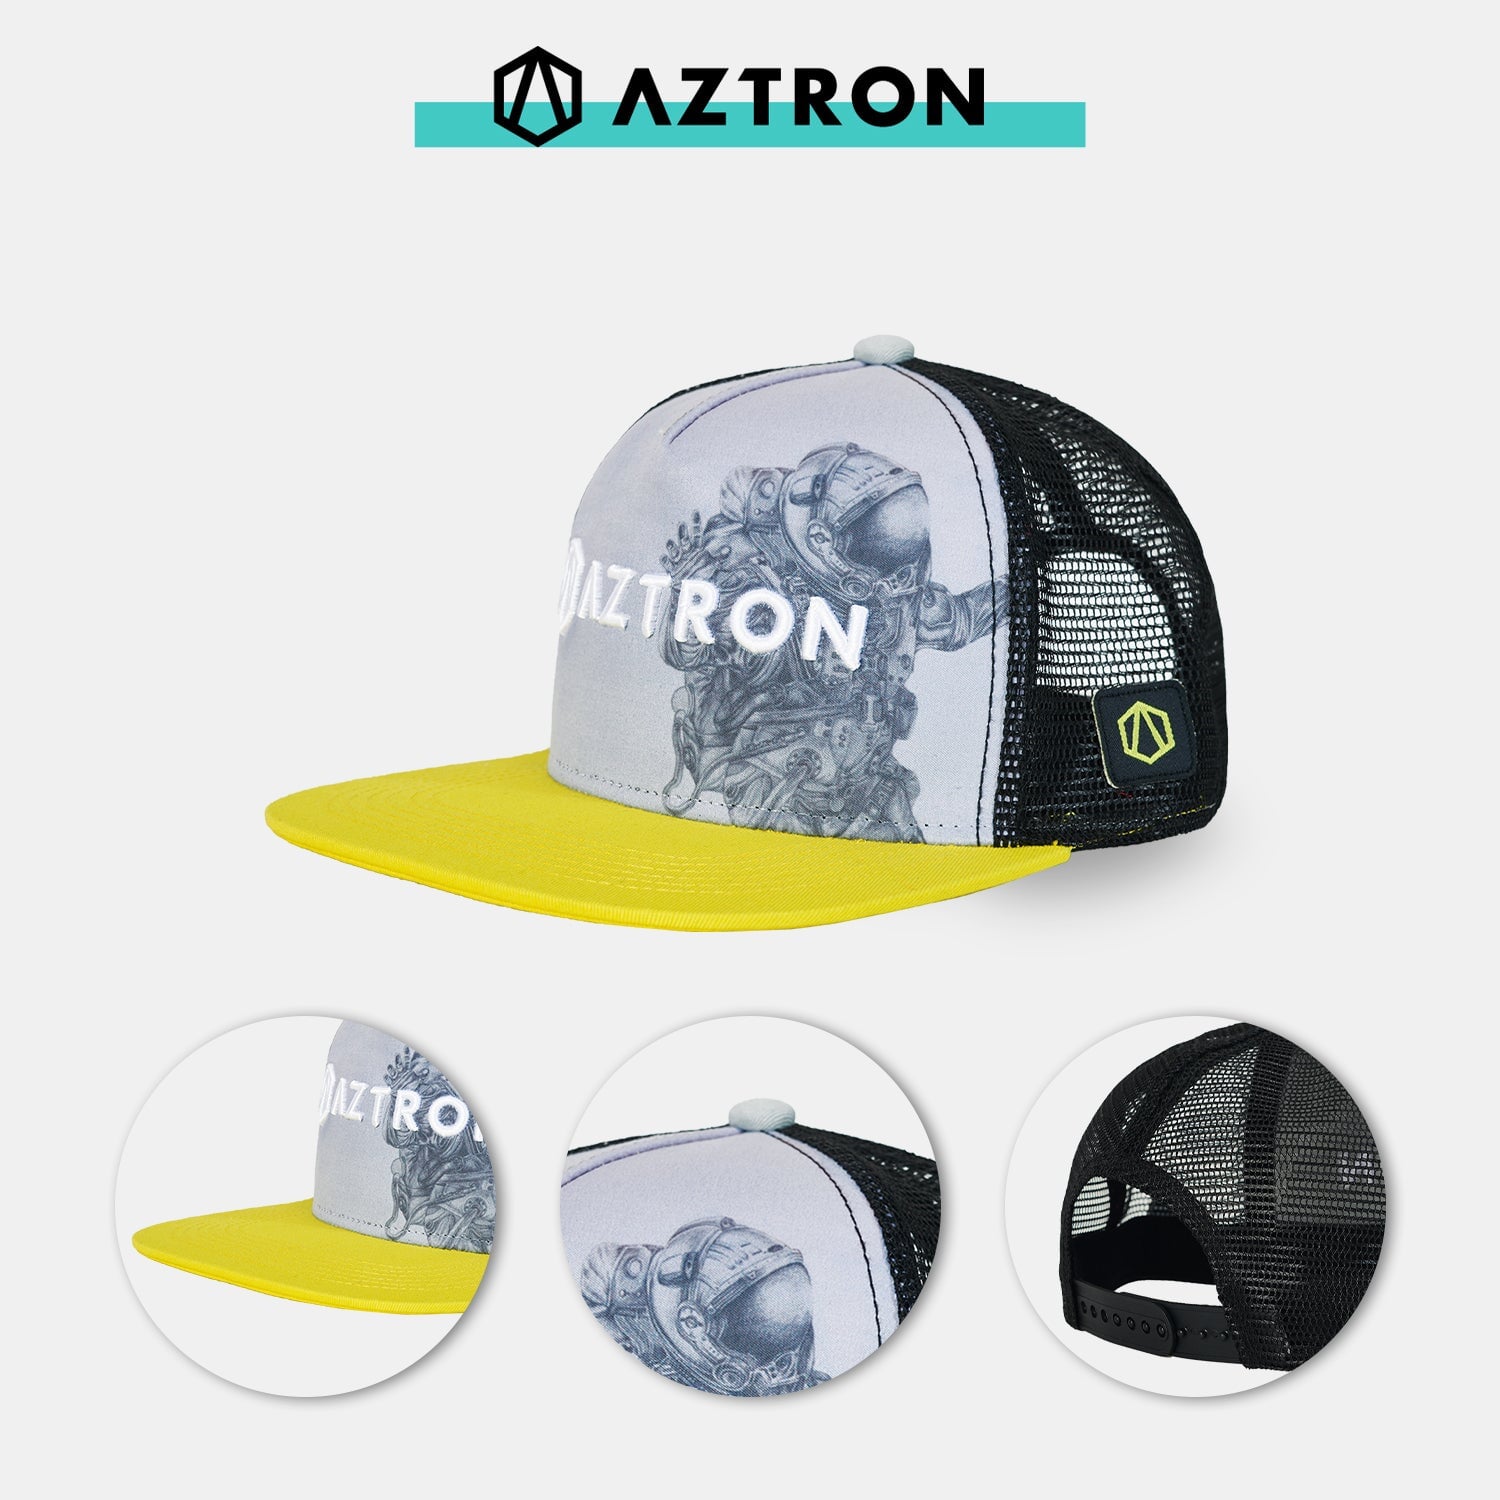 AZTRON Berretto Aztronaut, berretto, berretto da baseball, berretto SUP, berretto da camionista